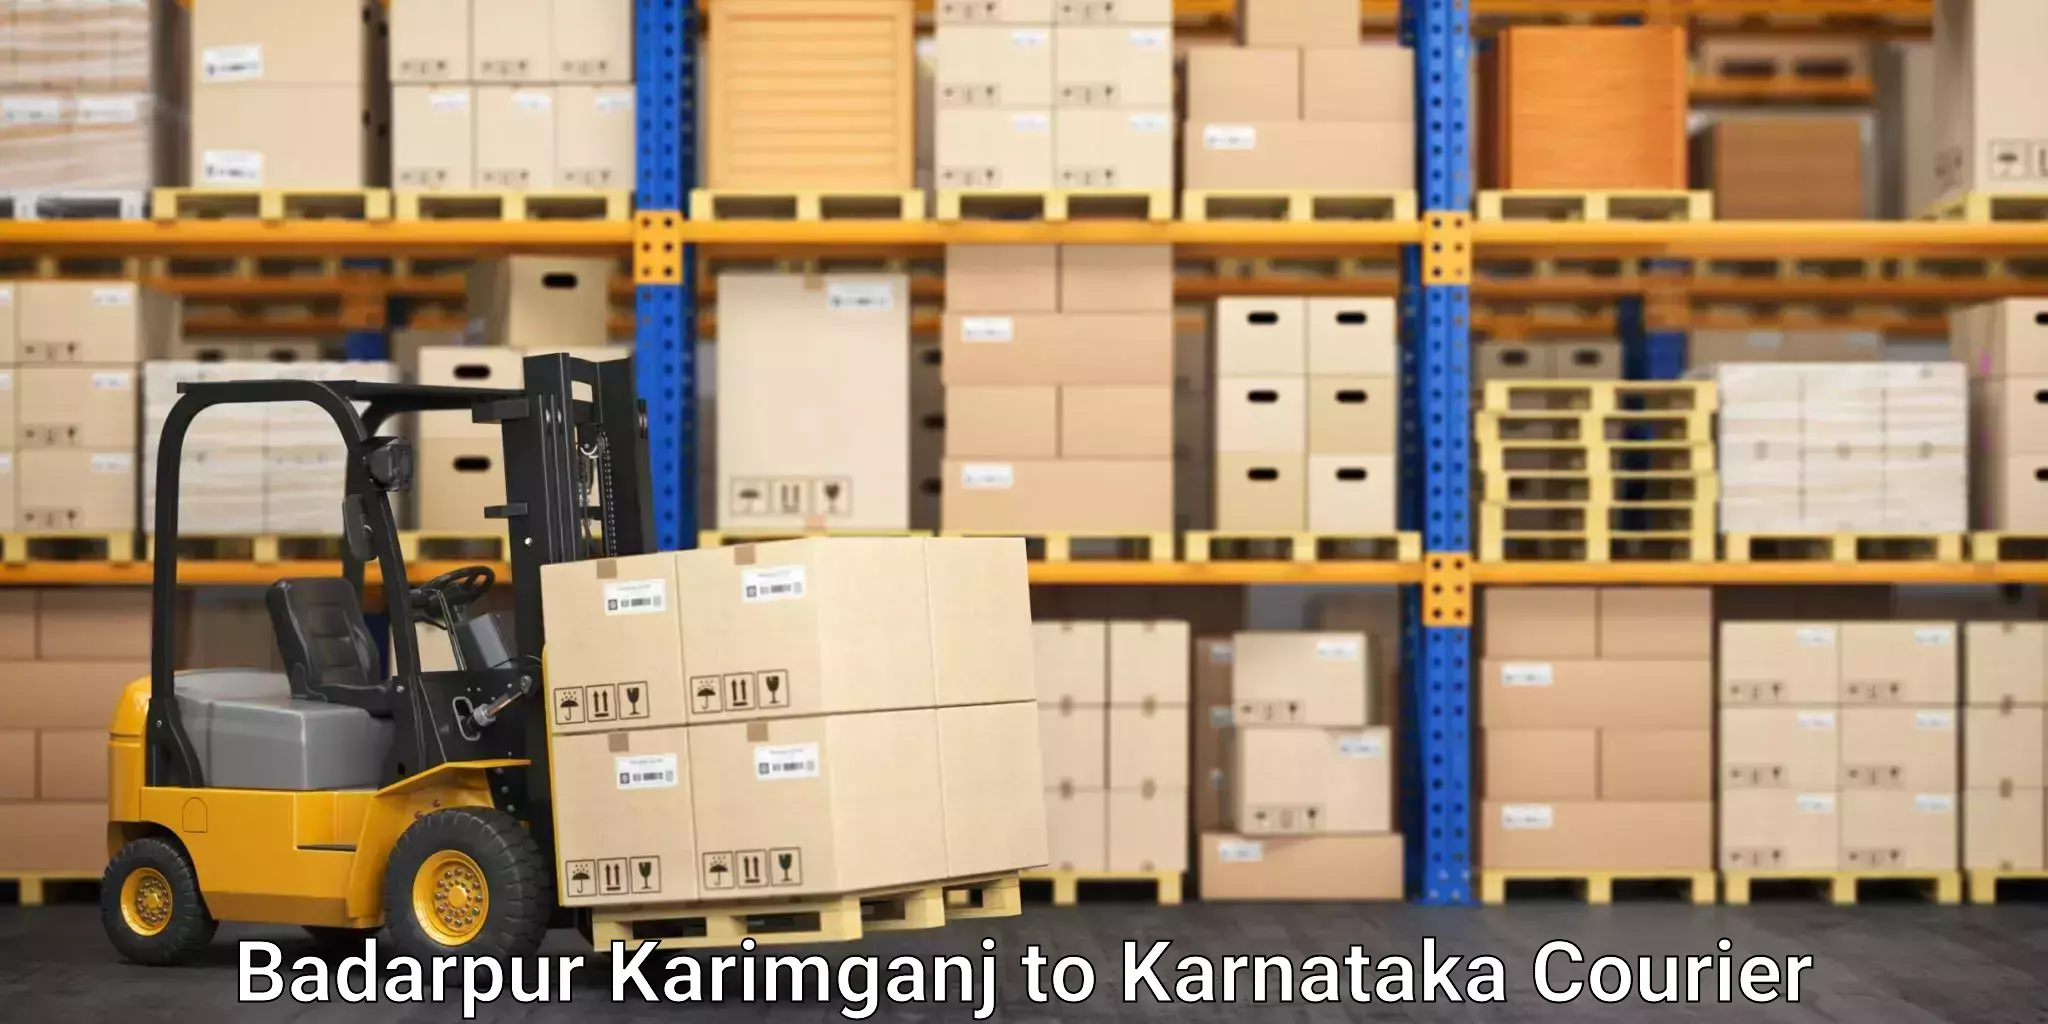 Express logistics providers Badarpur Karimganj to Shahapur